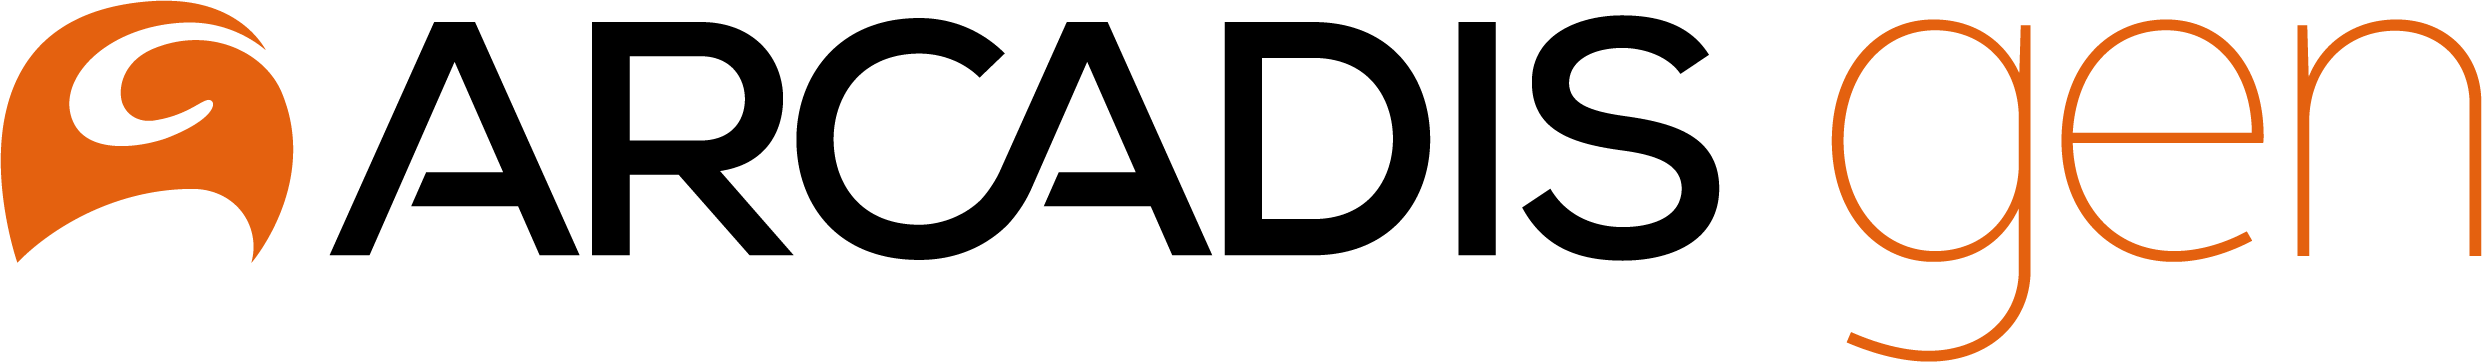 Arcadis Gen logo